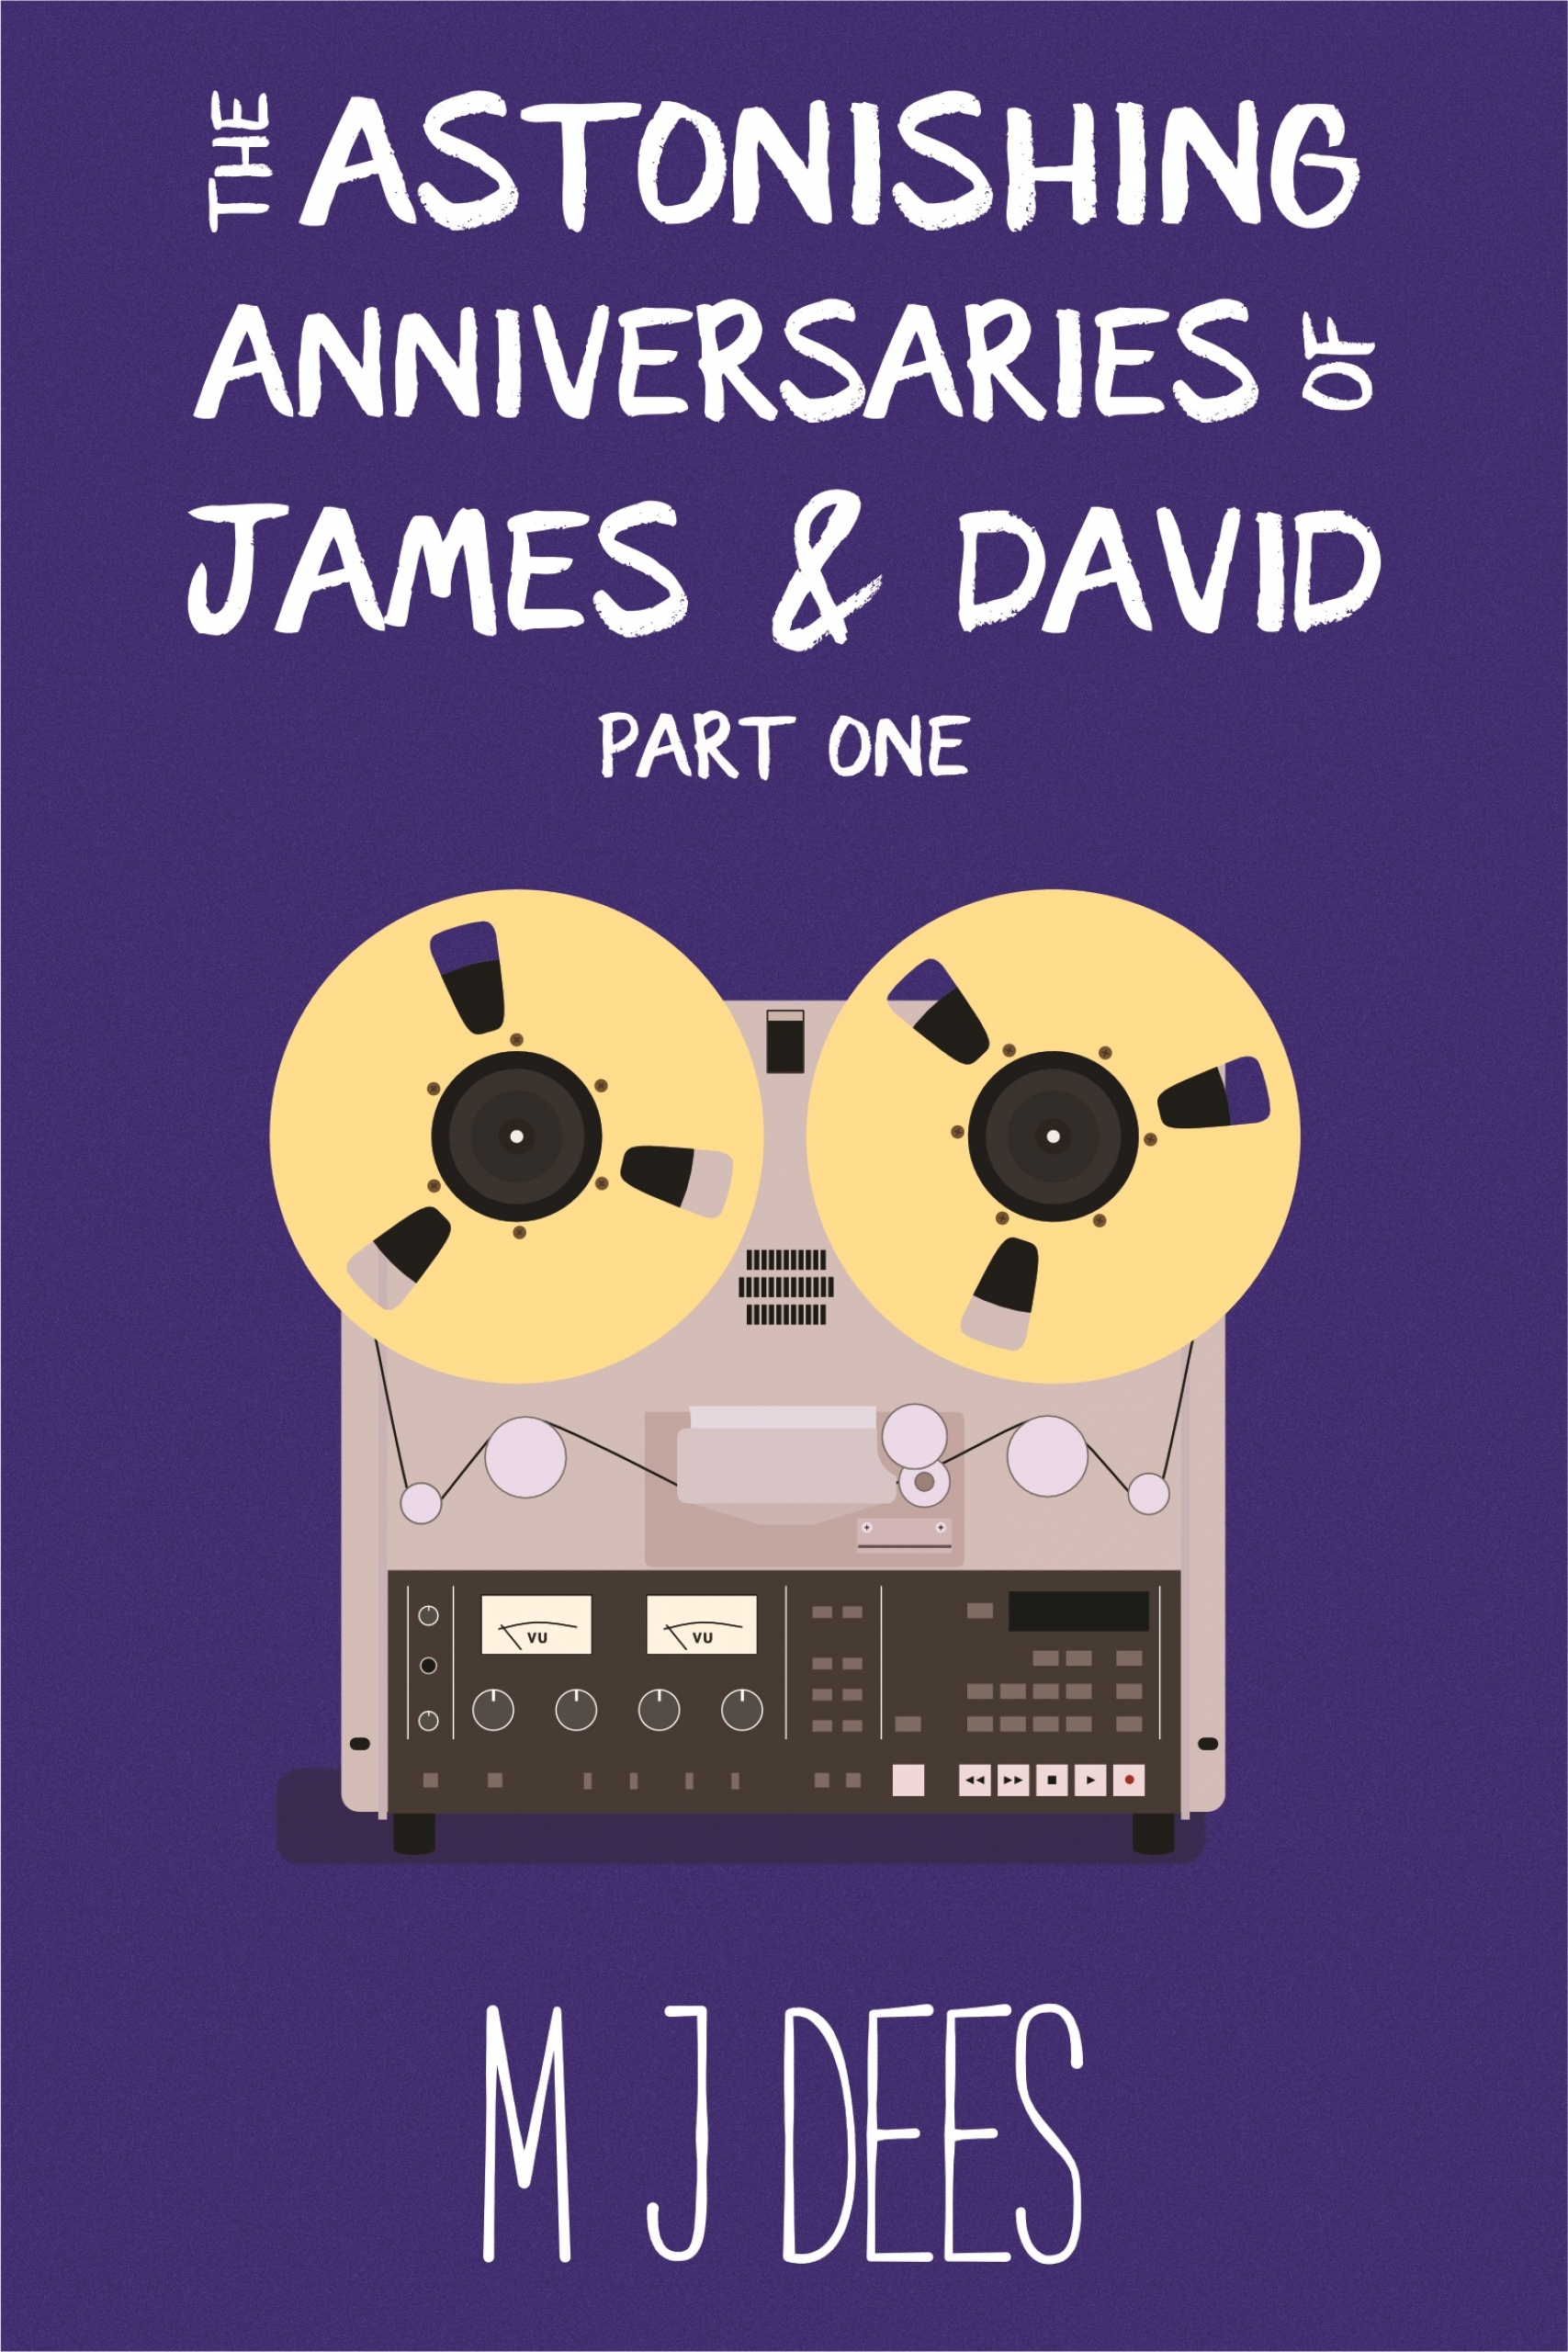 The Astonishing Anniversaries of James & David